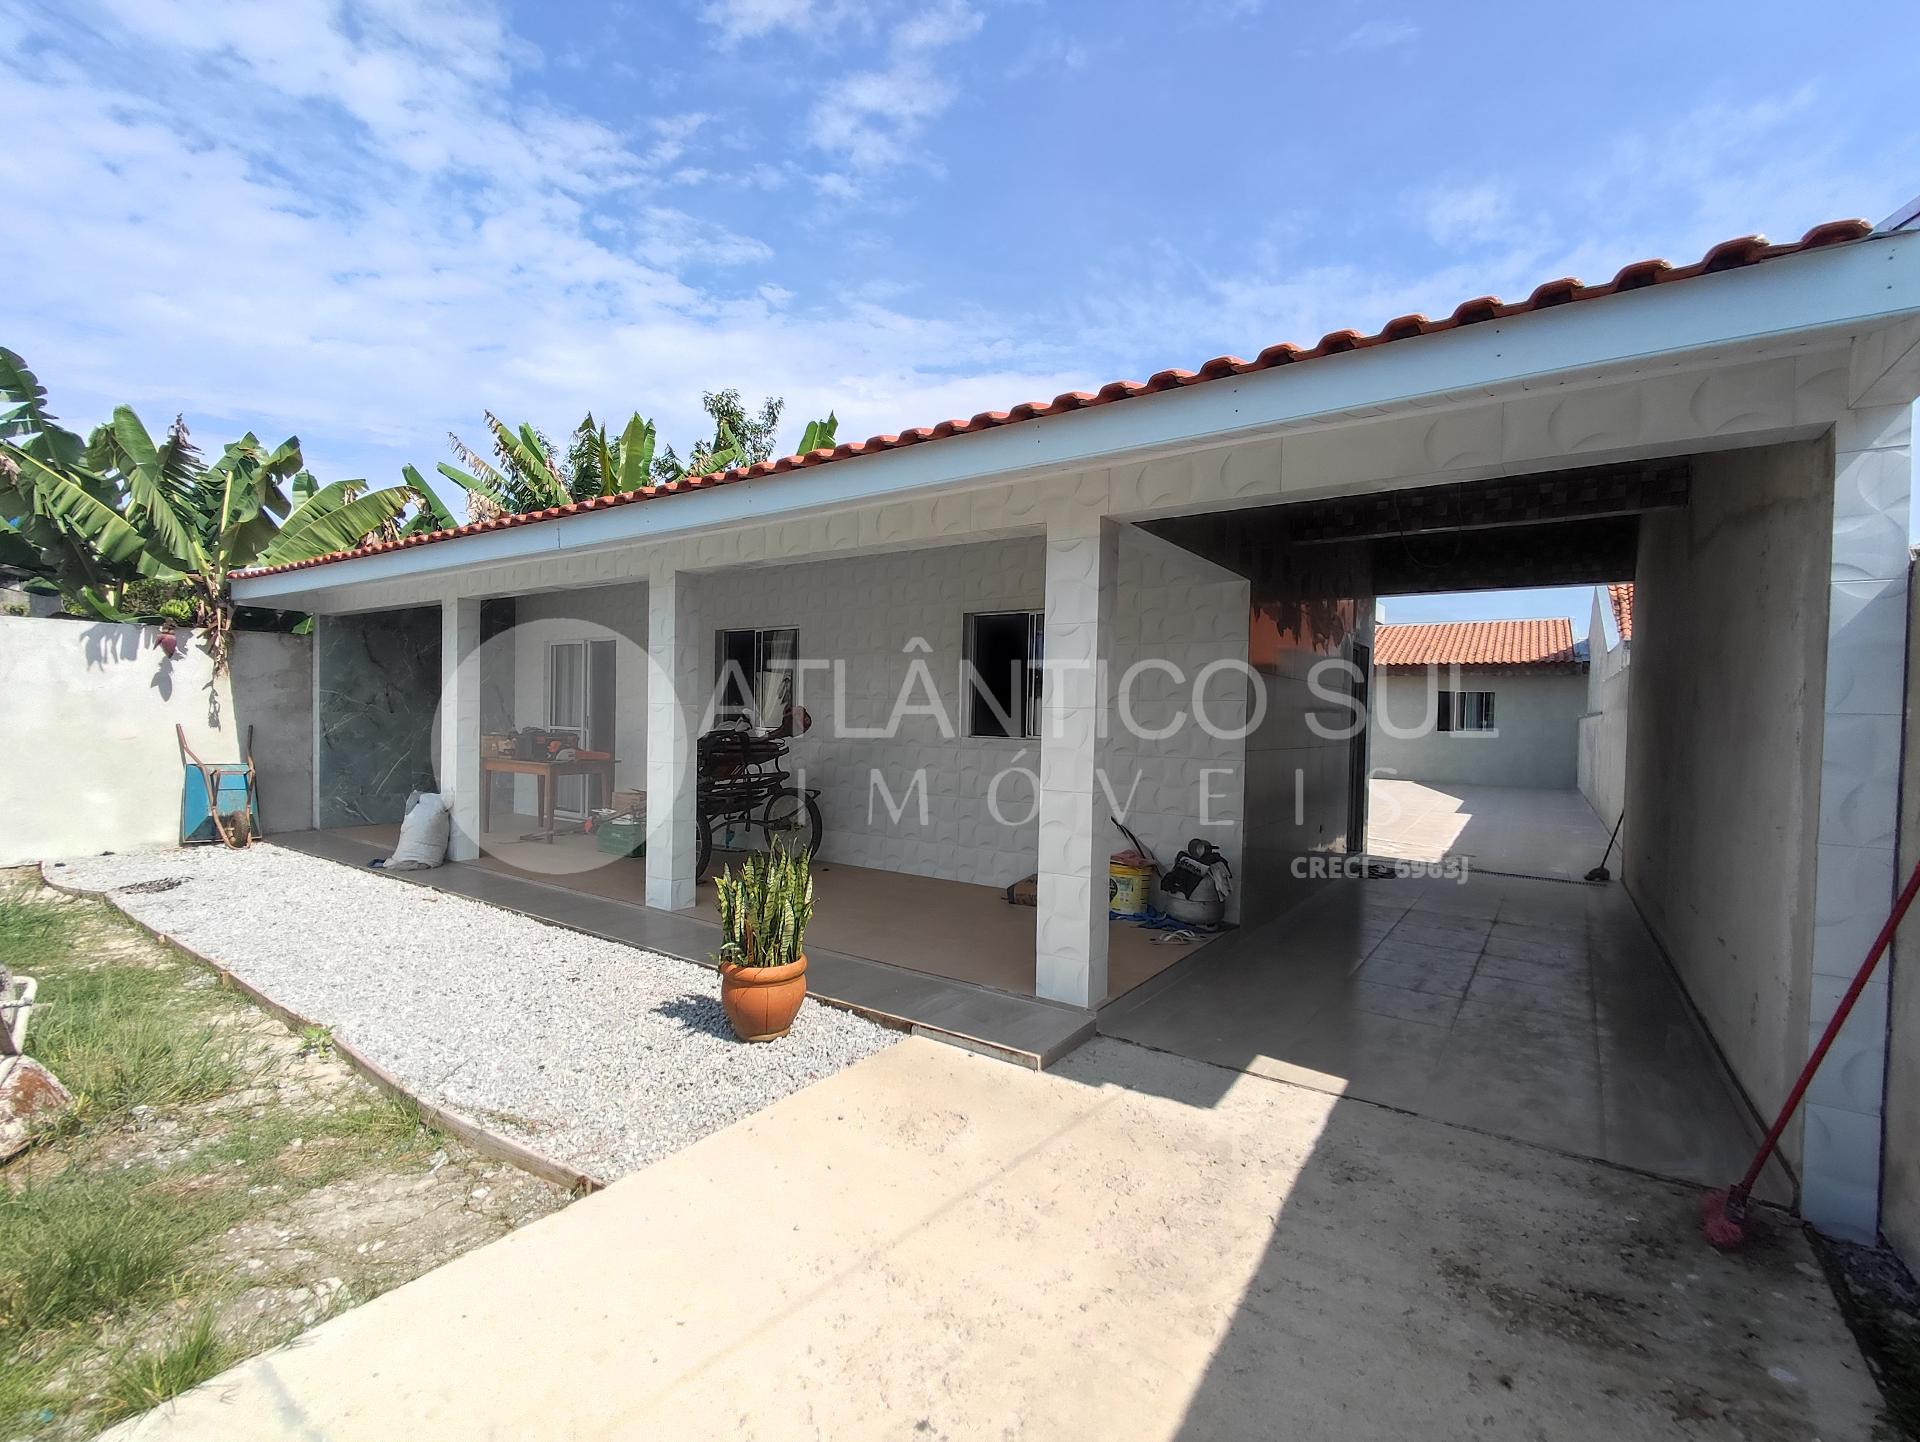 Casa nova  à venda, 04 quartos Praia de Leste, PONTAL DO PARAN...